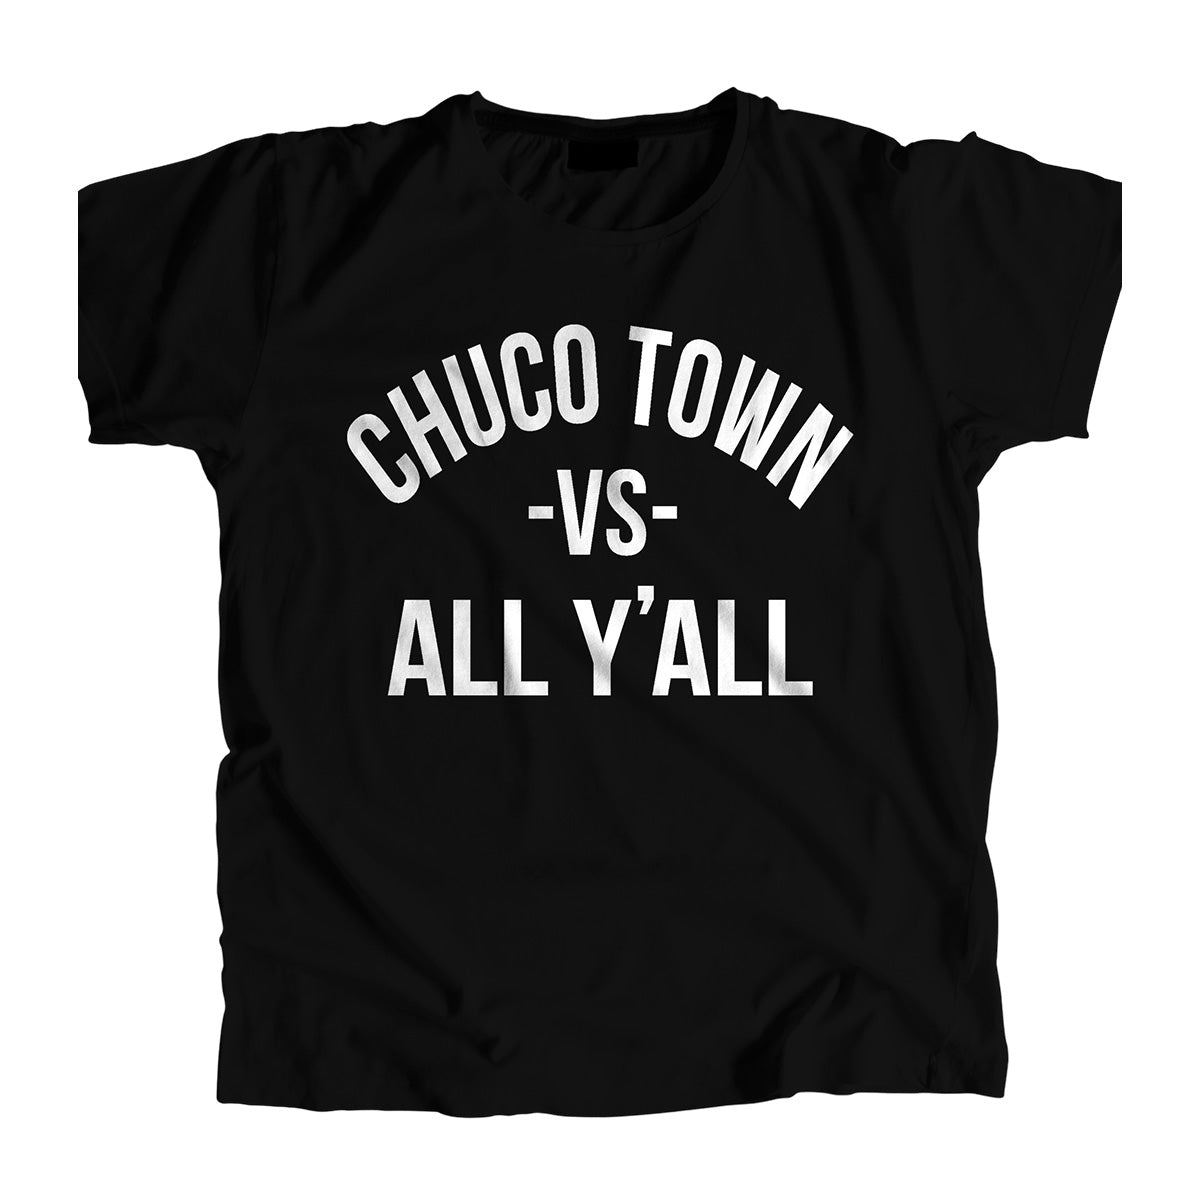 "Chuco Town vs All" Men's T-shirt (Black) by Team Dirty